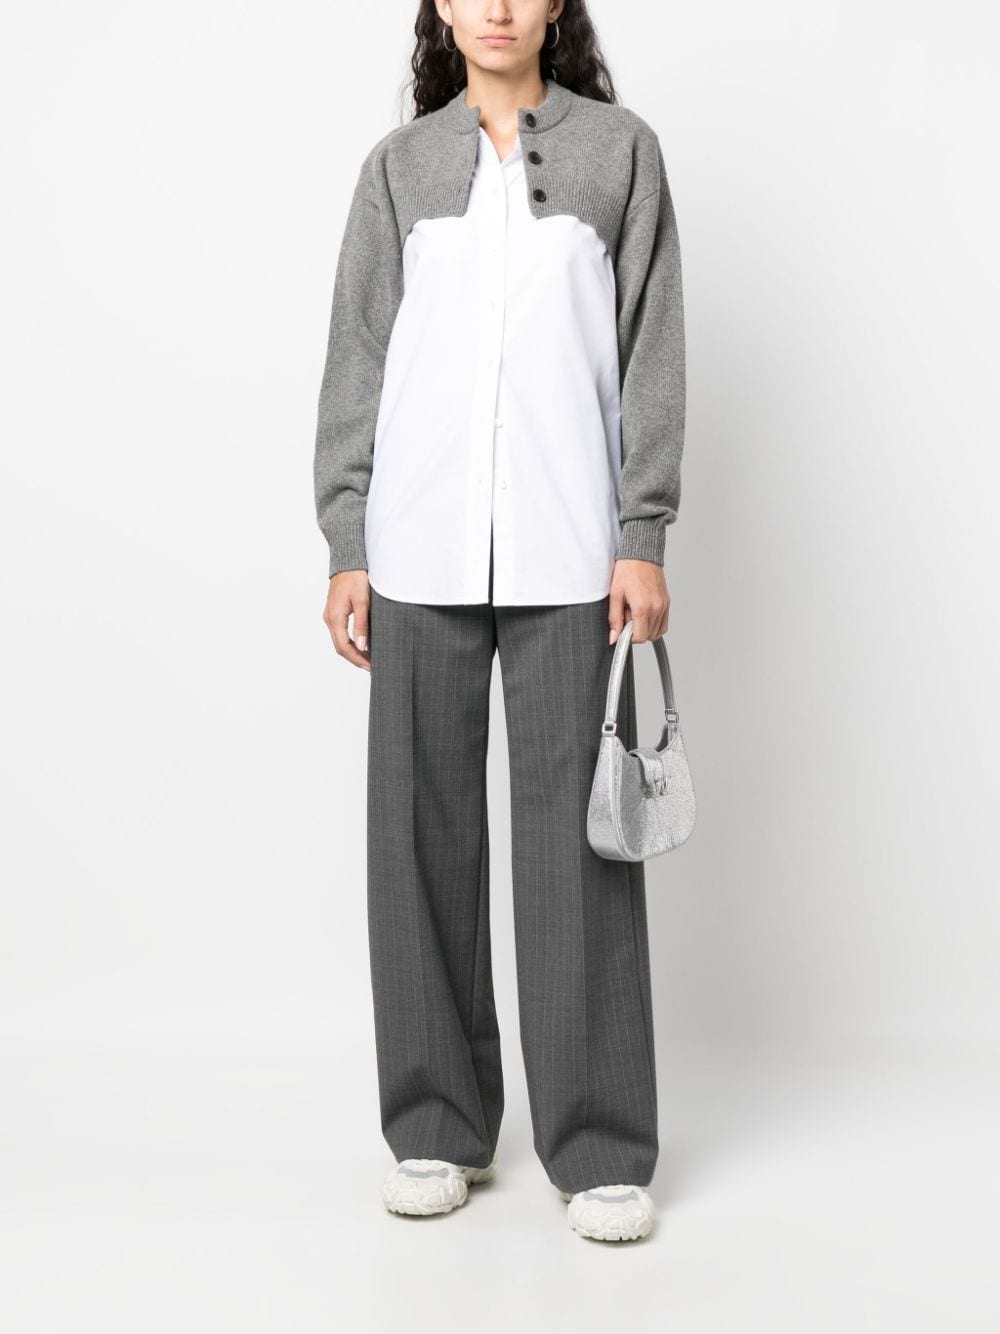 Alexander Wang layered cardigan and shirt - Wit